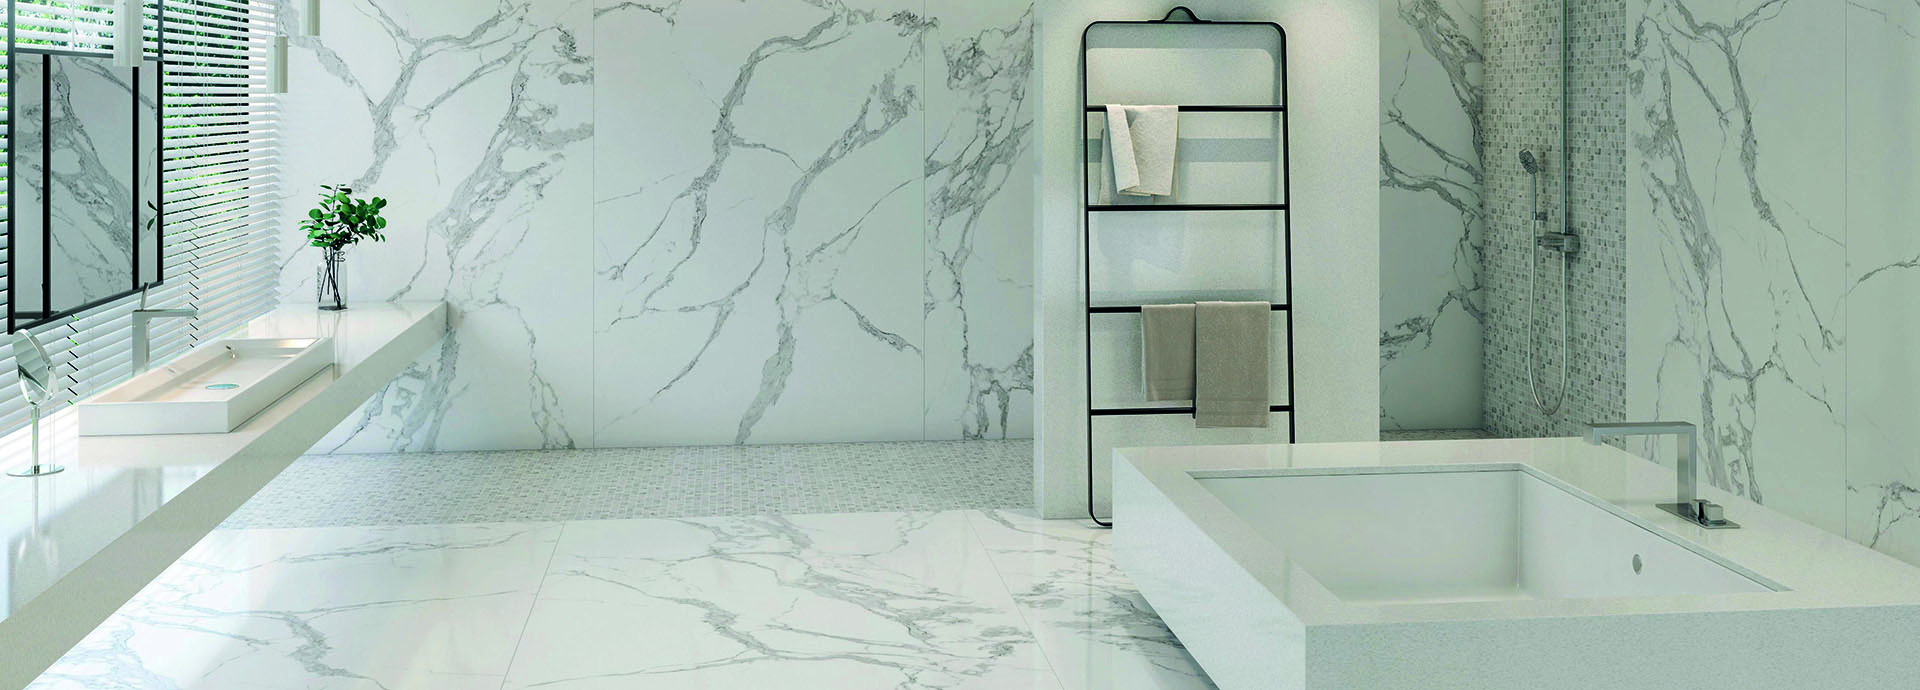 Ceramic Statuario Bathroom floor and wall cladding